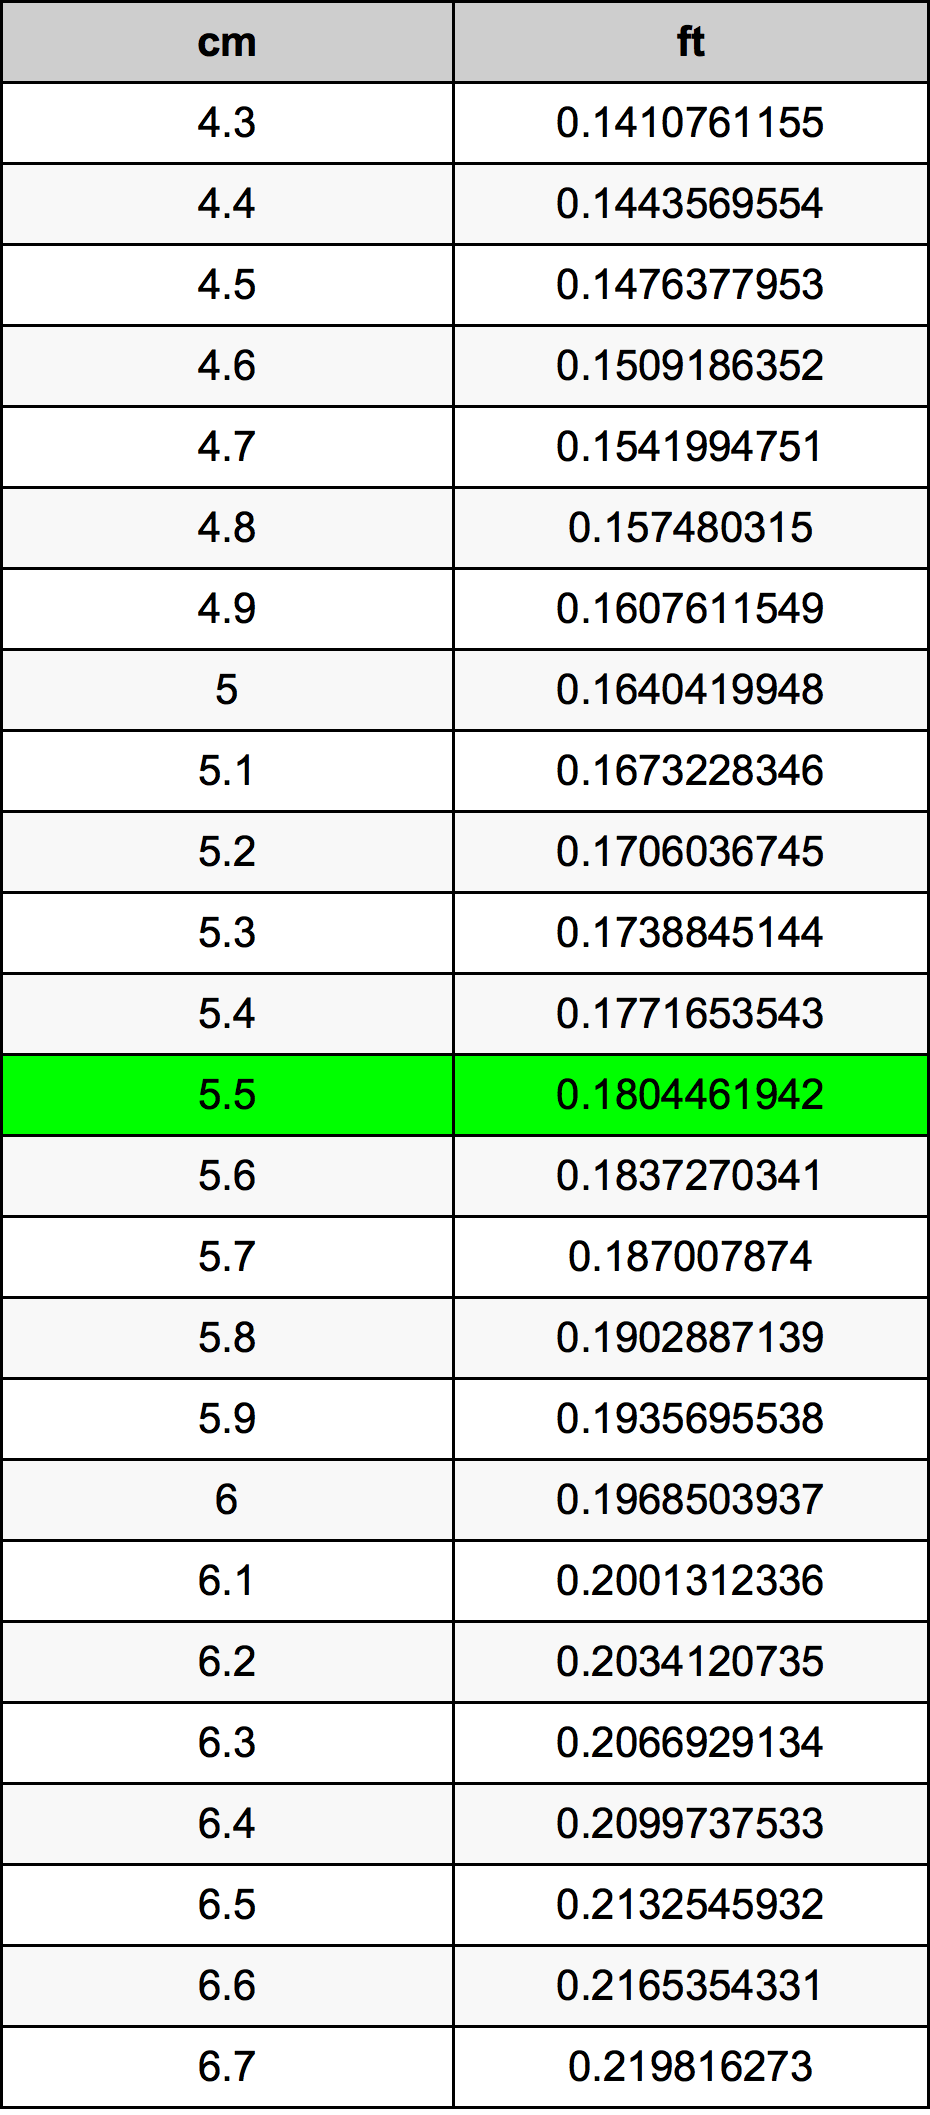 5.5 Centiméter átszámítási táblázat